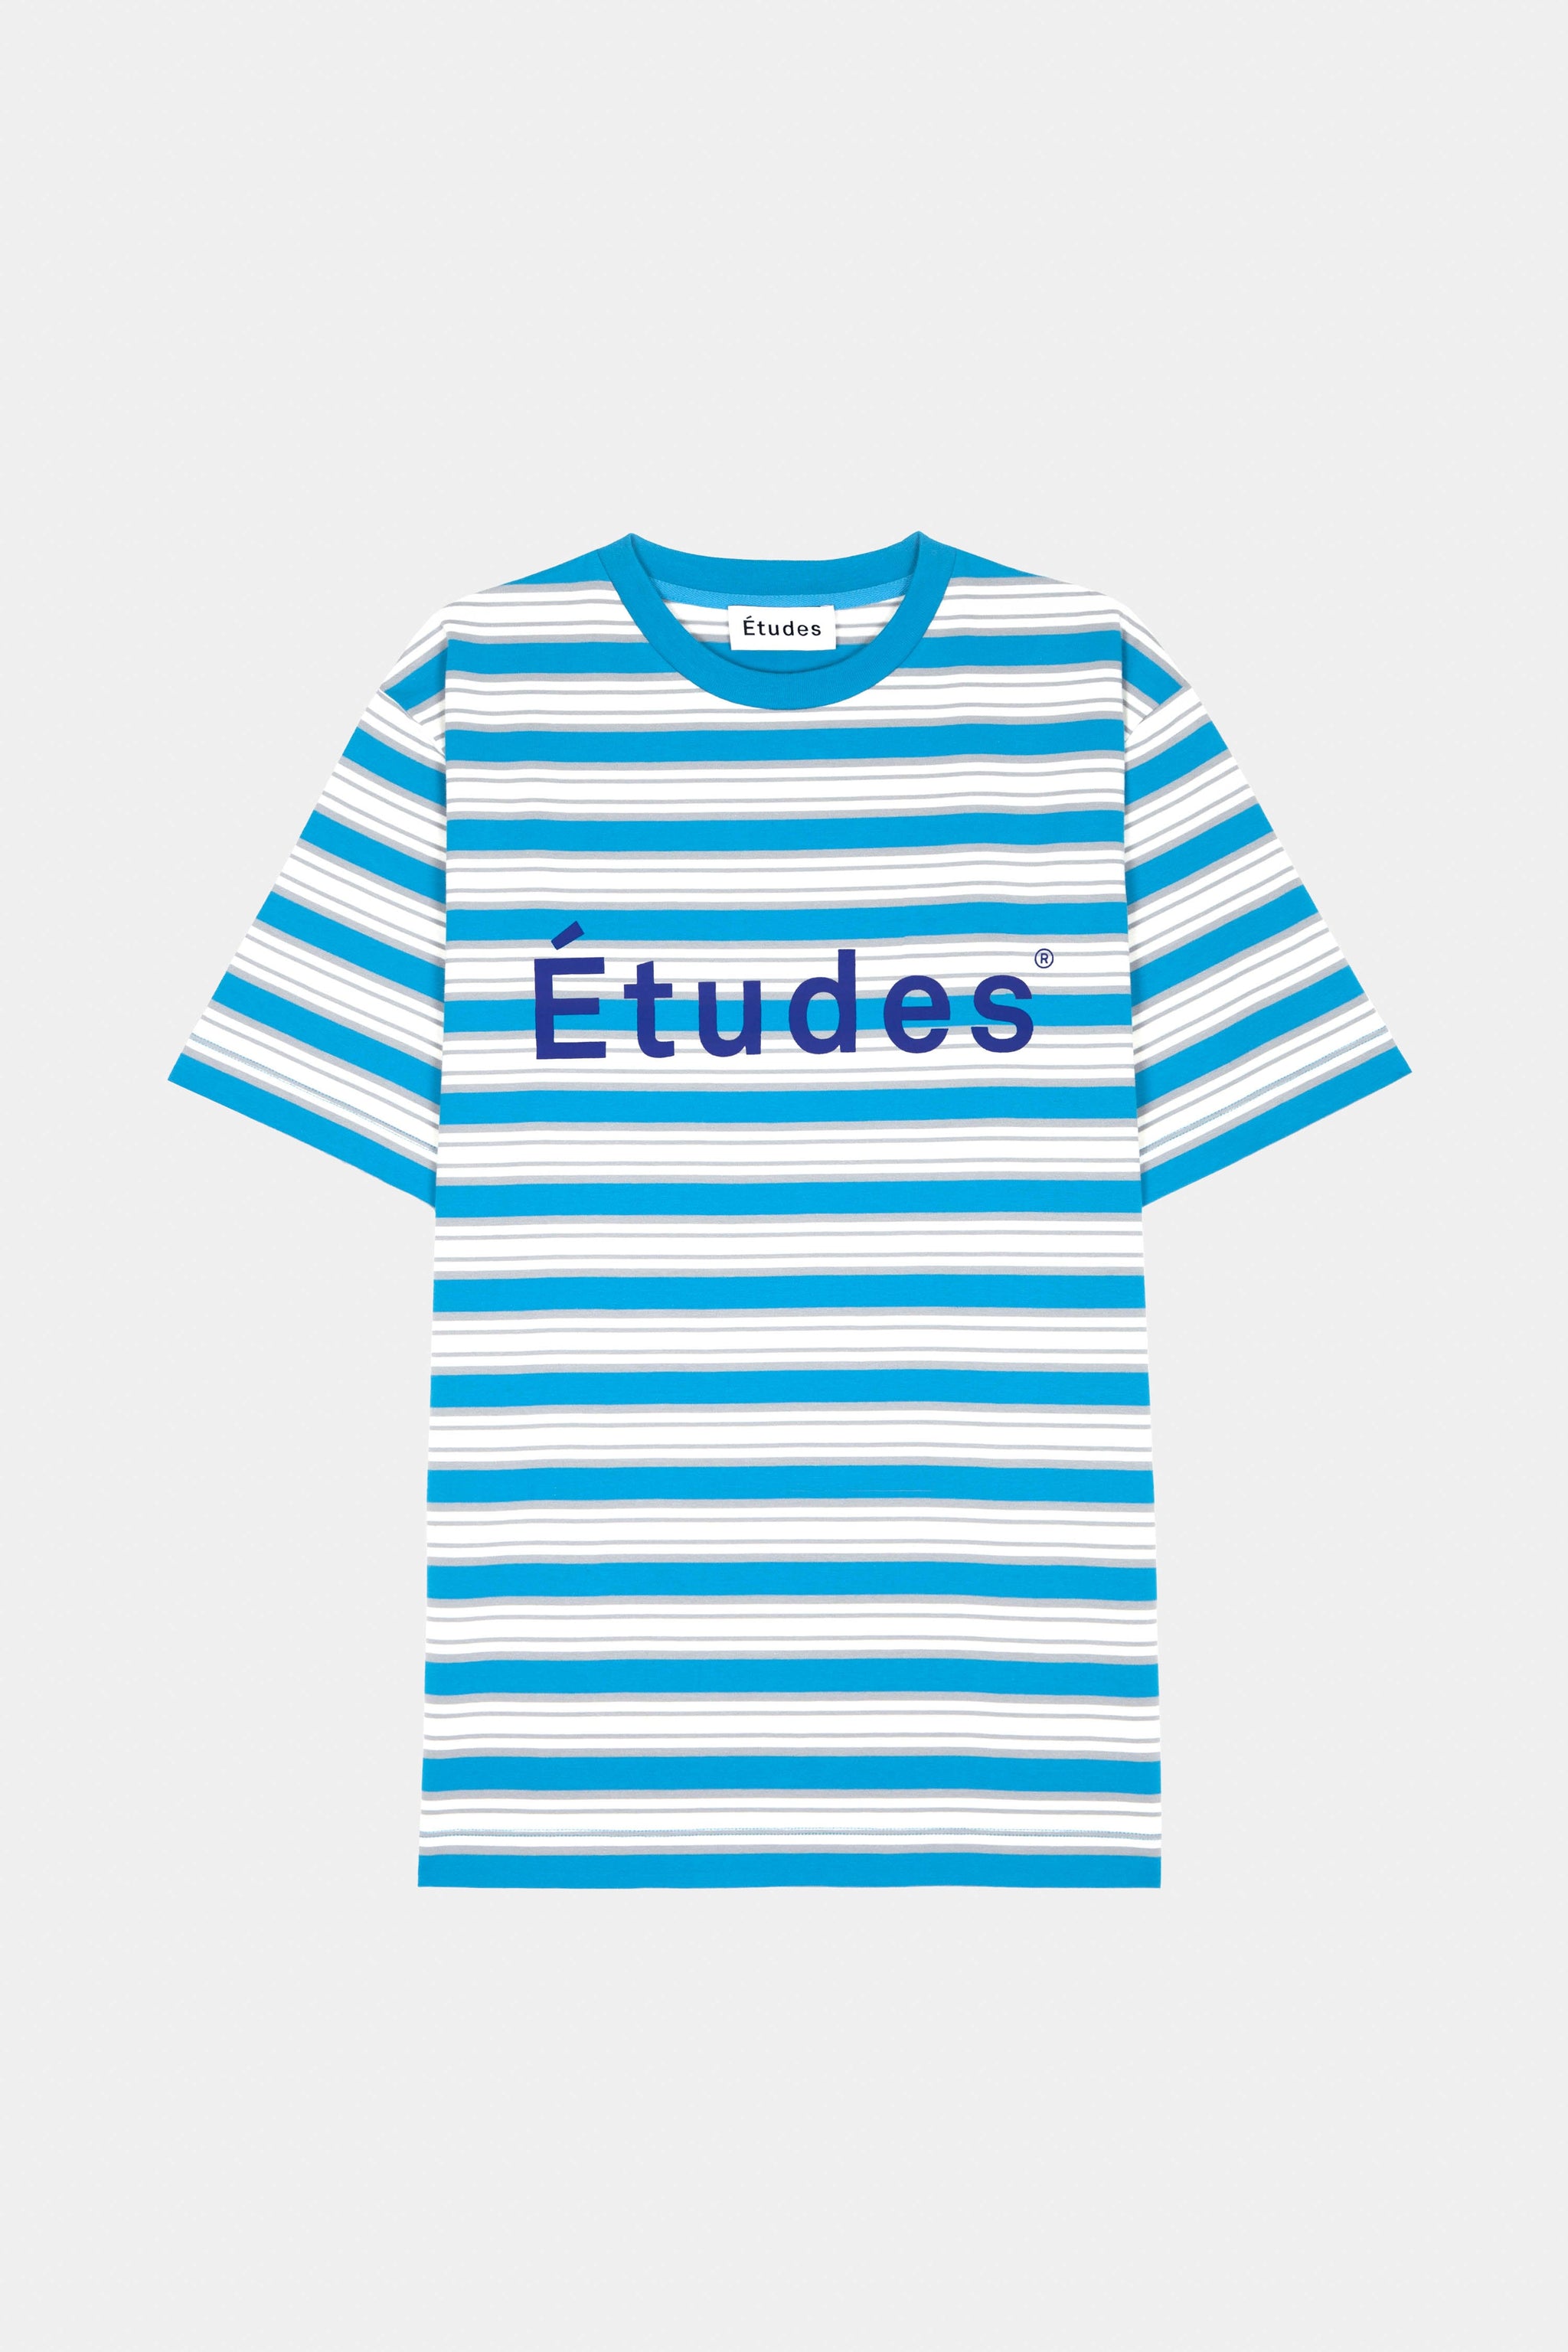 ÉTUDES WONDER ETUDES STRIPED BLUE T-SHIRTS 2